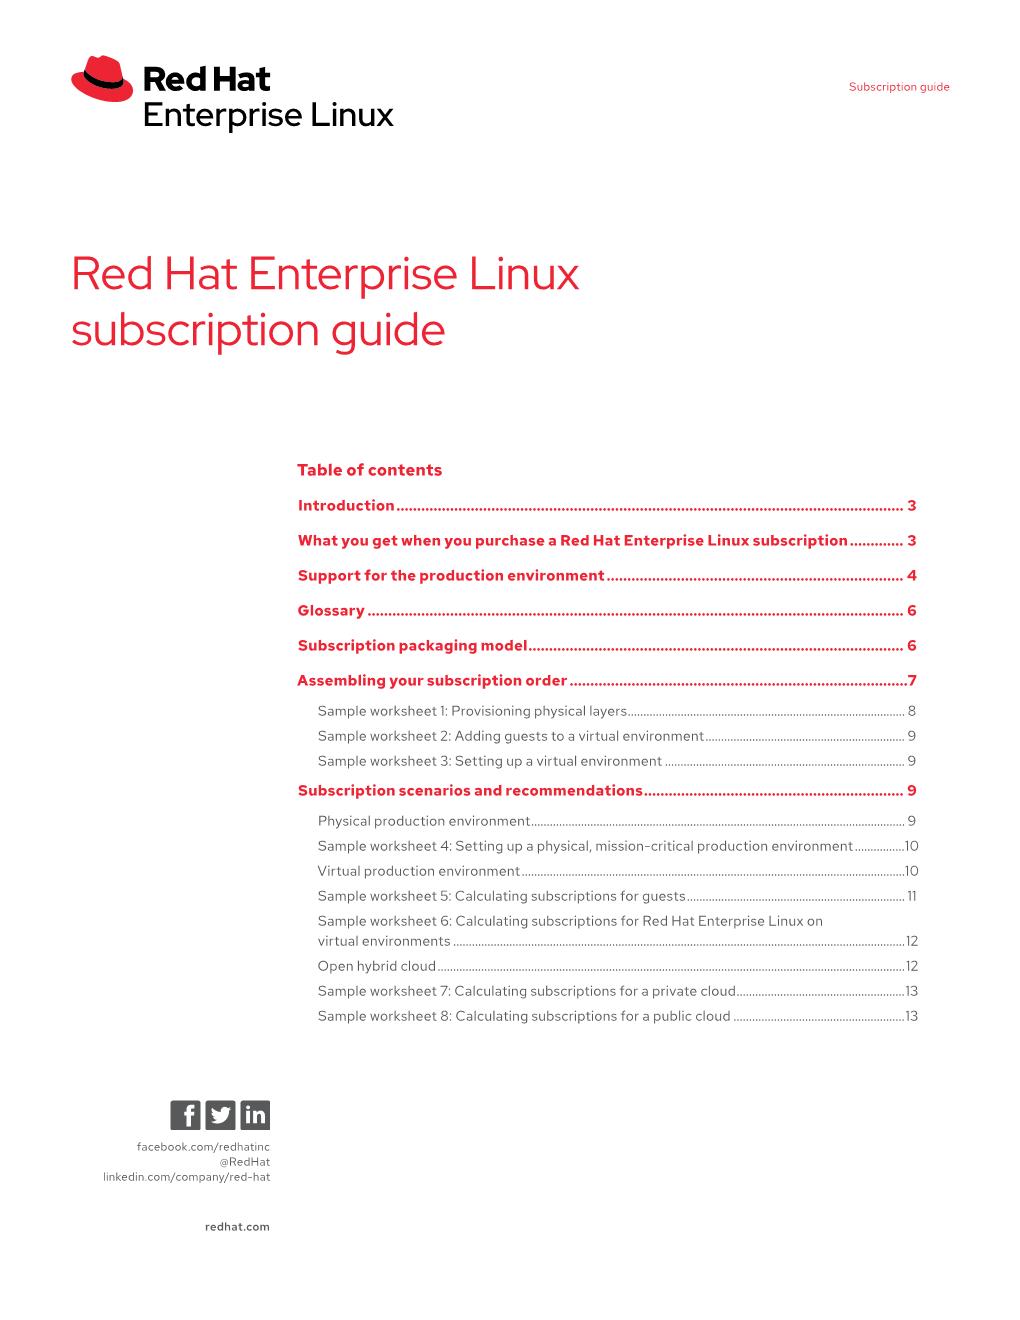 Red Hat Enterprise Linux Subscription Guide